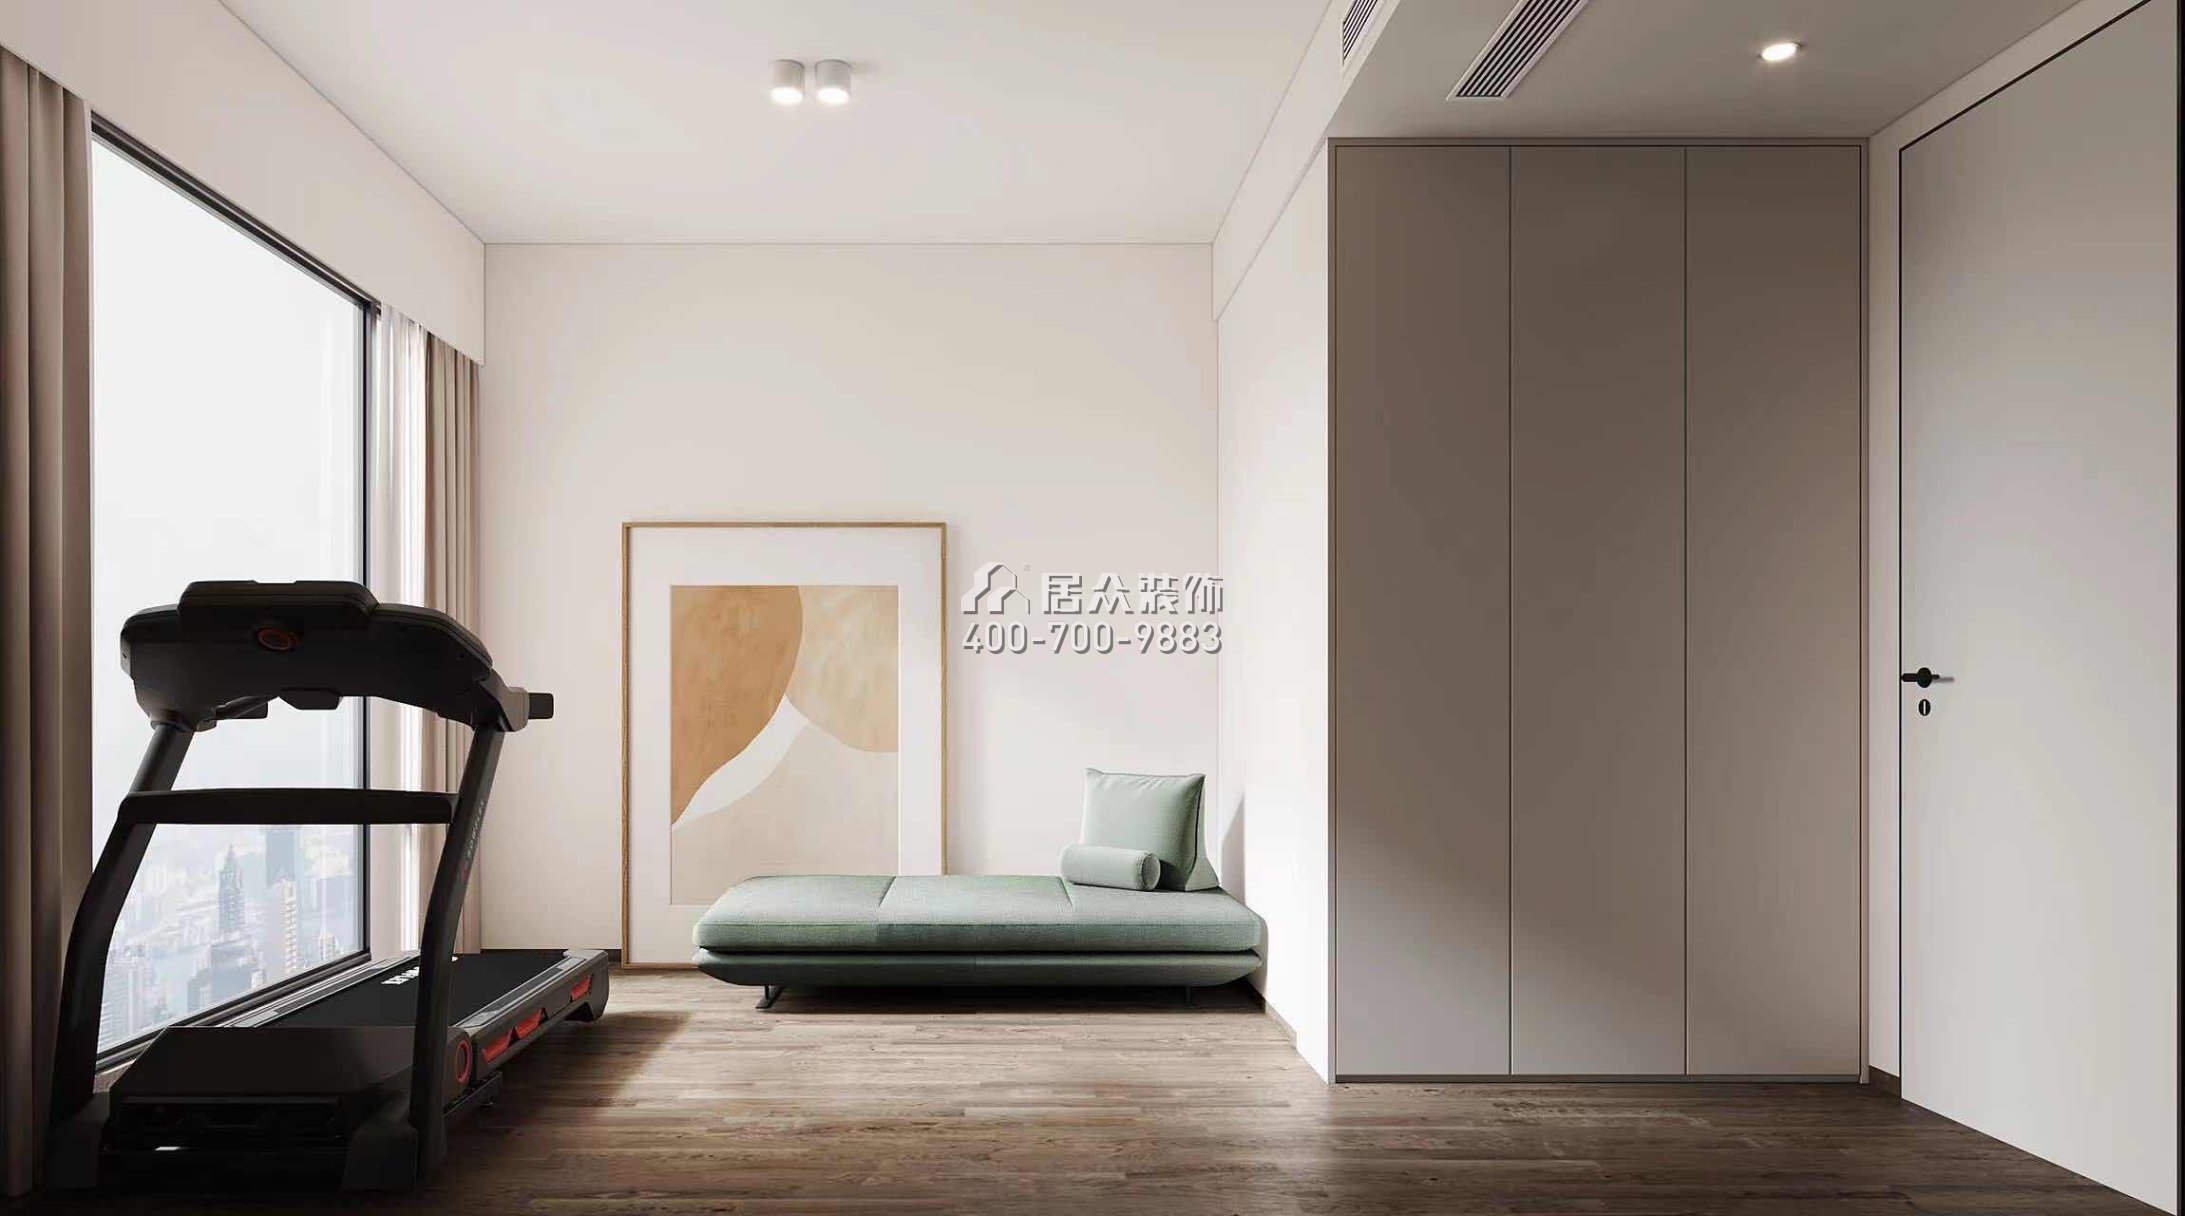 中洲濱海華府一期166平方米現代簡約風格平層戶型娛樂室裝修效果圖